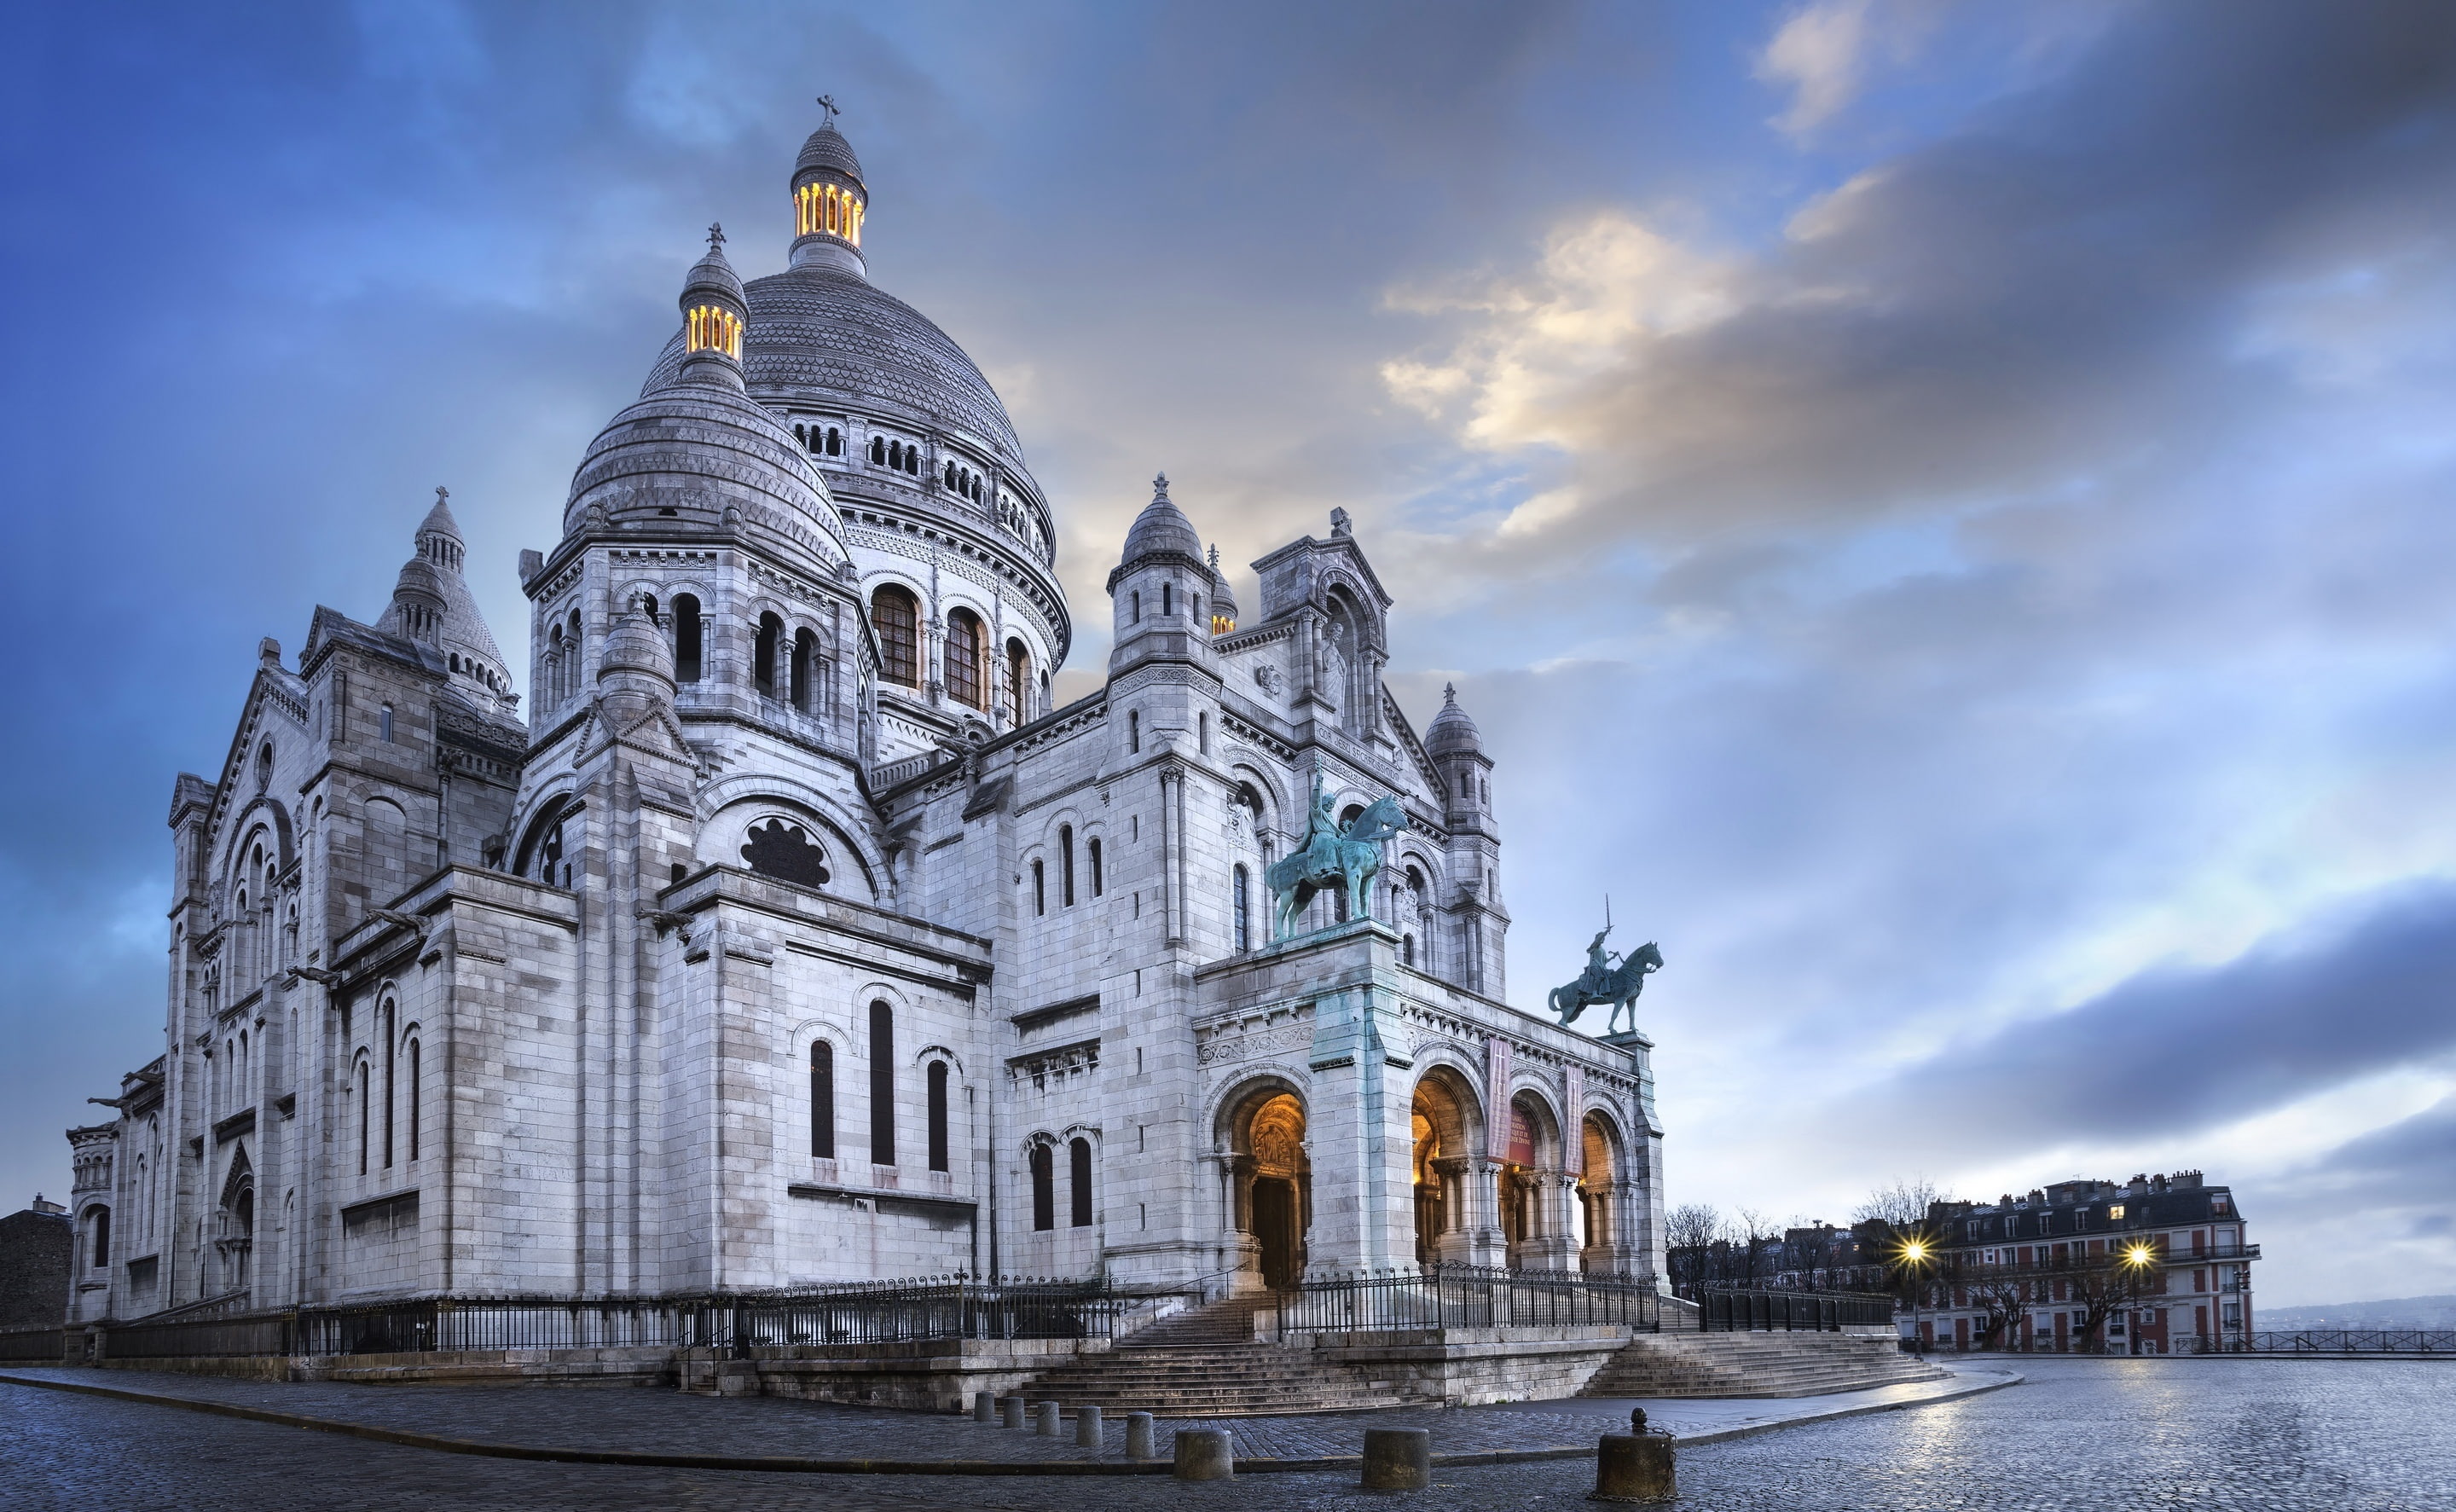 Sacre-Coeur Basilica, Montmartre, Paris, France, white concrete dome mosque